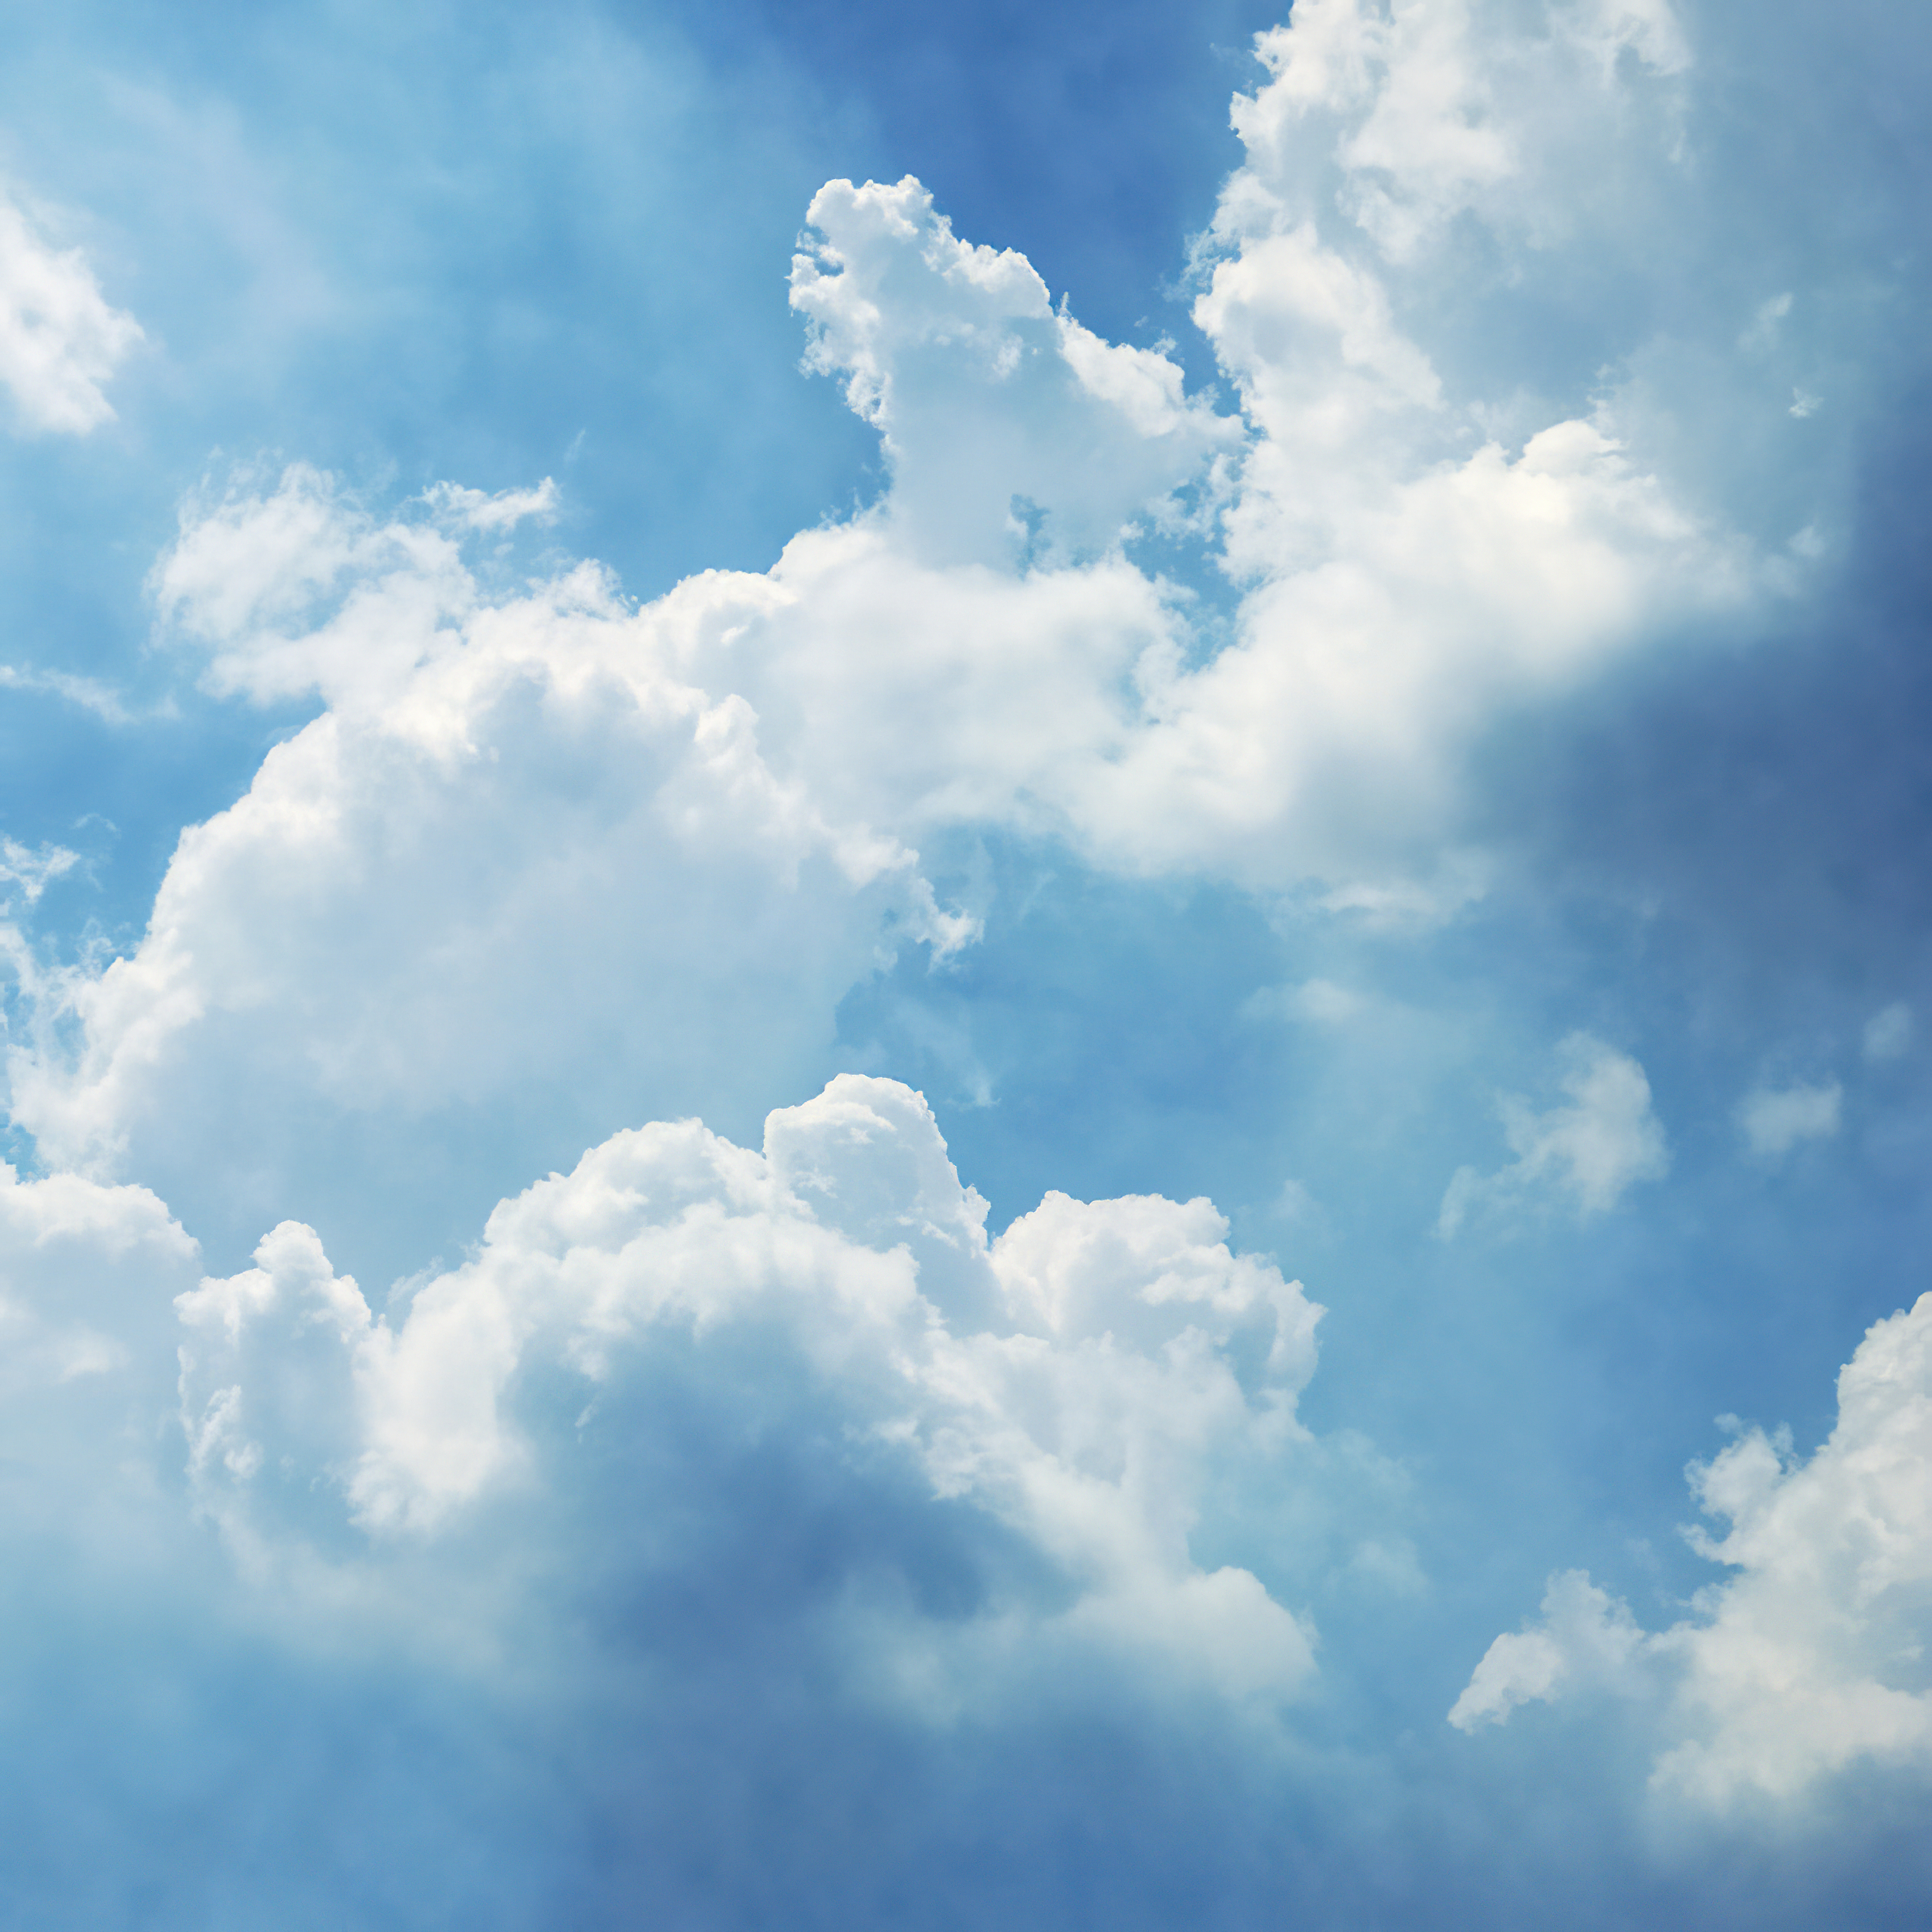 Bầu trời xanh rực rỡ với những đám mây trắng xóa là một trong những cảnh tượng tuyệt đẹp nhất mà thiên nhiên đã tạo ra. Hãy ngắm nhìn ảnh bầu trời xanh với đám mây để cùng lắng đọng và thư giãn sau những giờ phút căng thẳng.